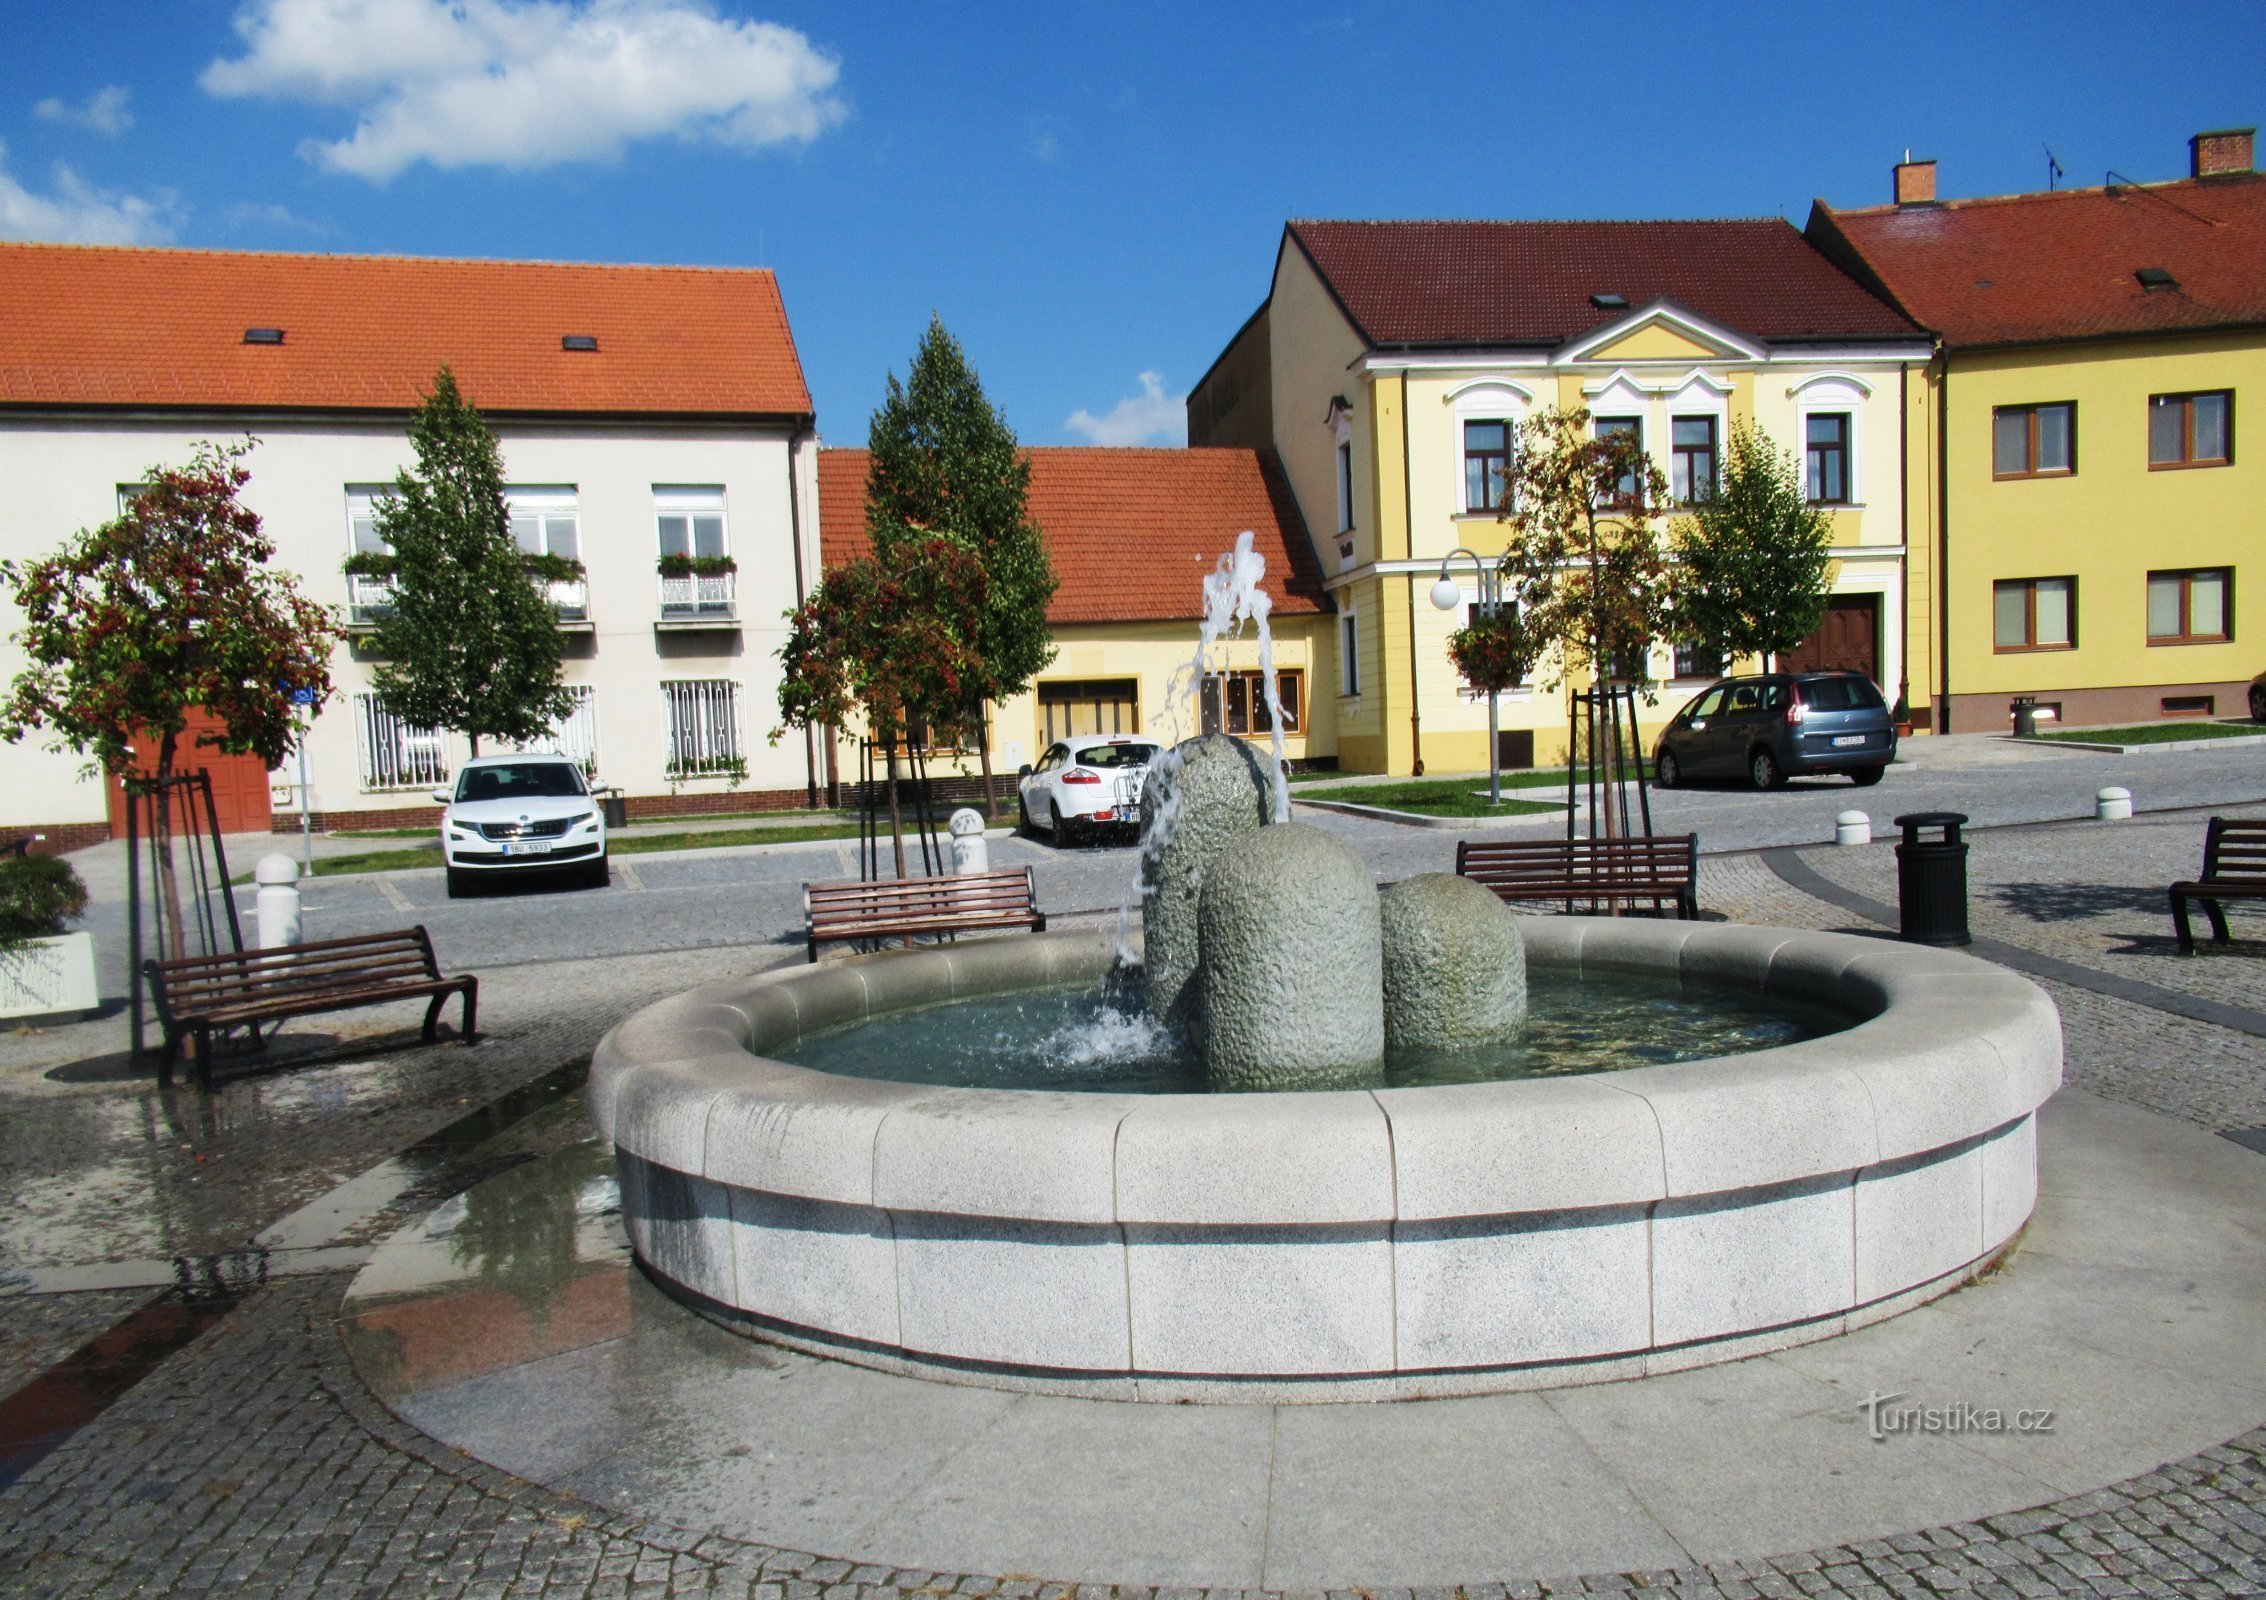 O Museu Municipal Masaryk em Veselí nad Moravou